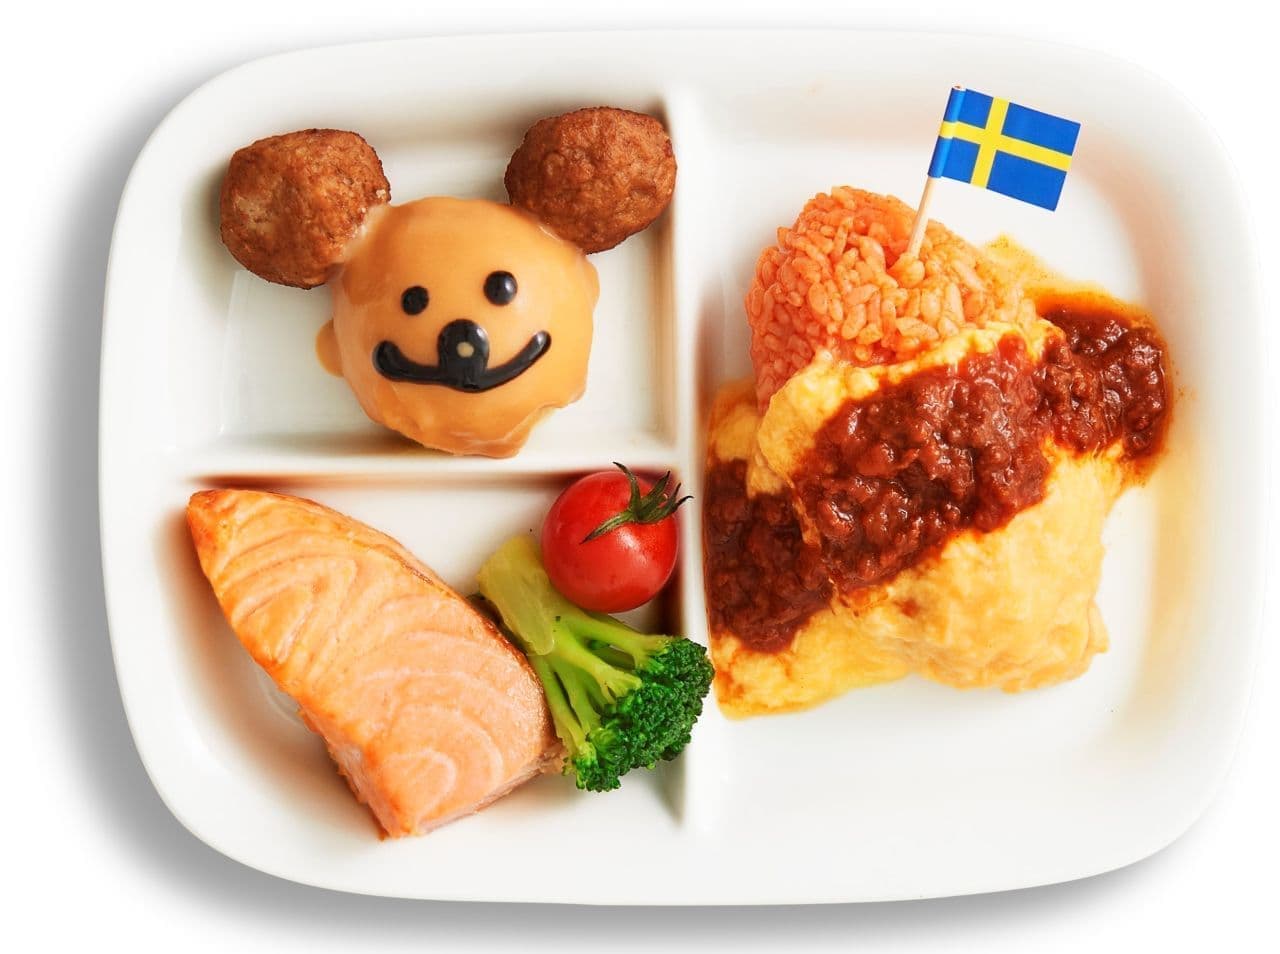 IKEA restaurant "Bjorn's omelet rice plate (with bonus)"